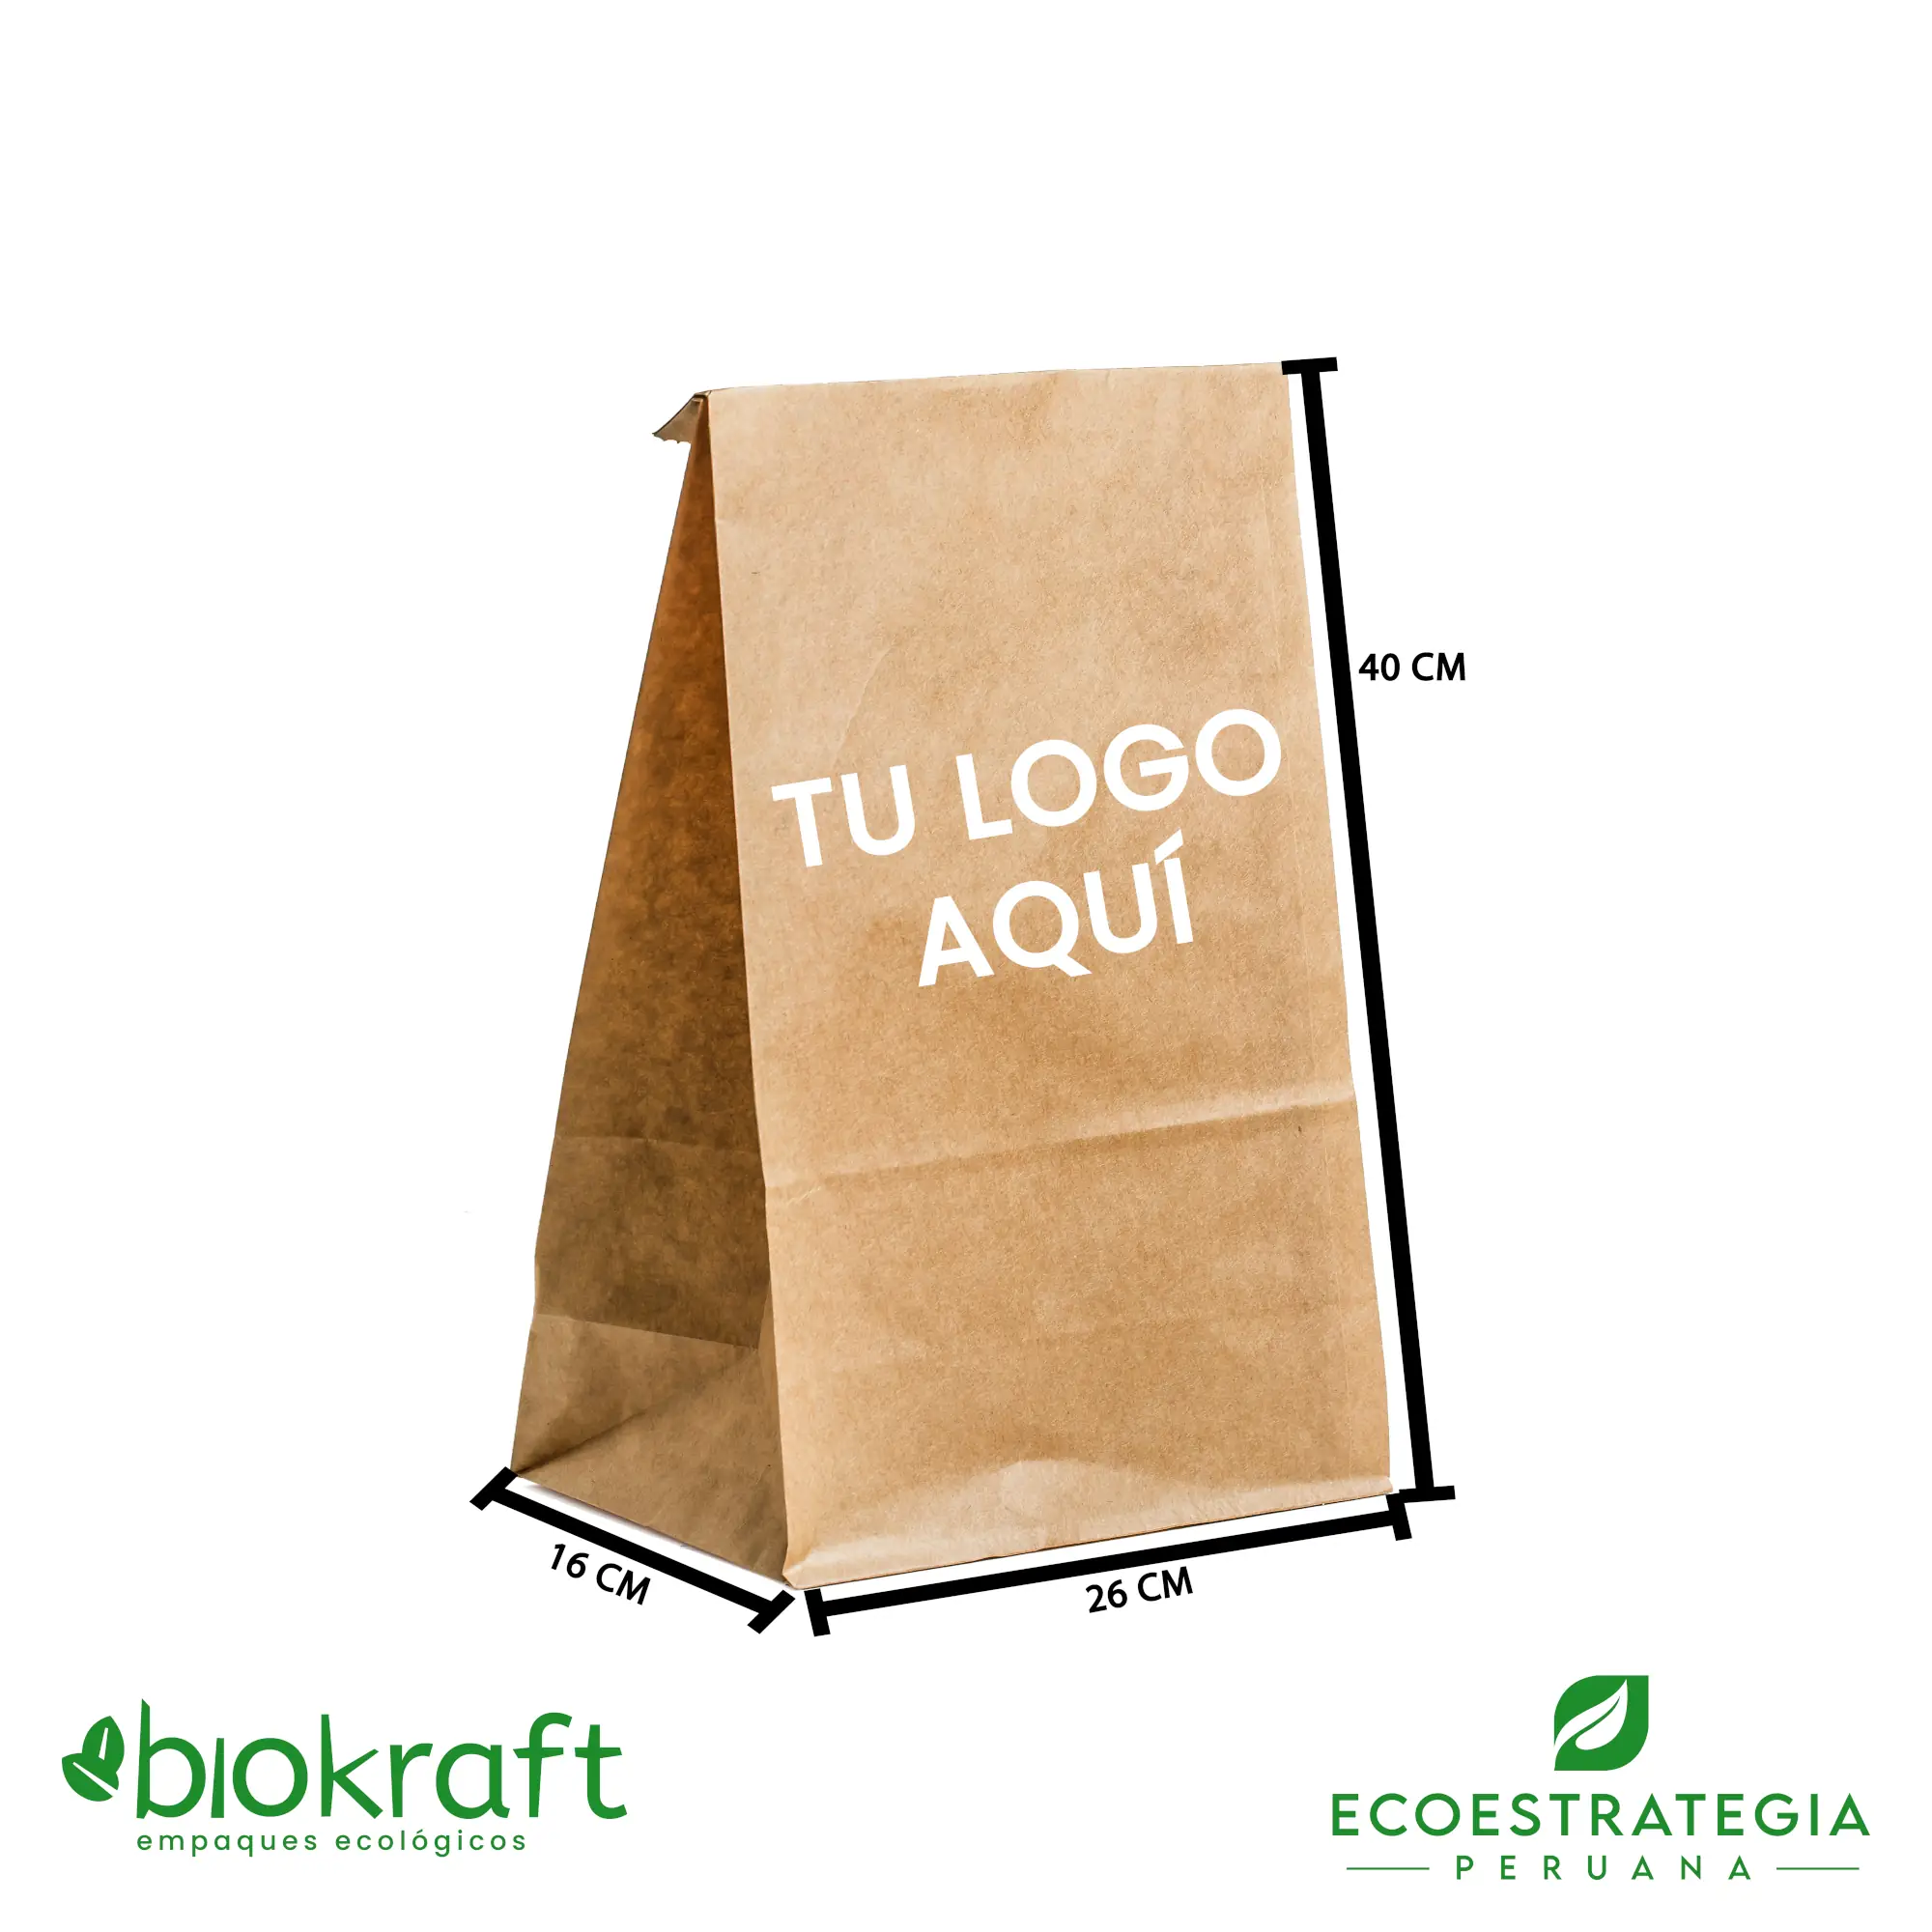 Contra la voluntad represa Él mismo Eco Estrategia Peruana: Bolsa papel kraft biodegradable #30